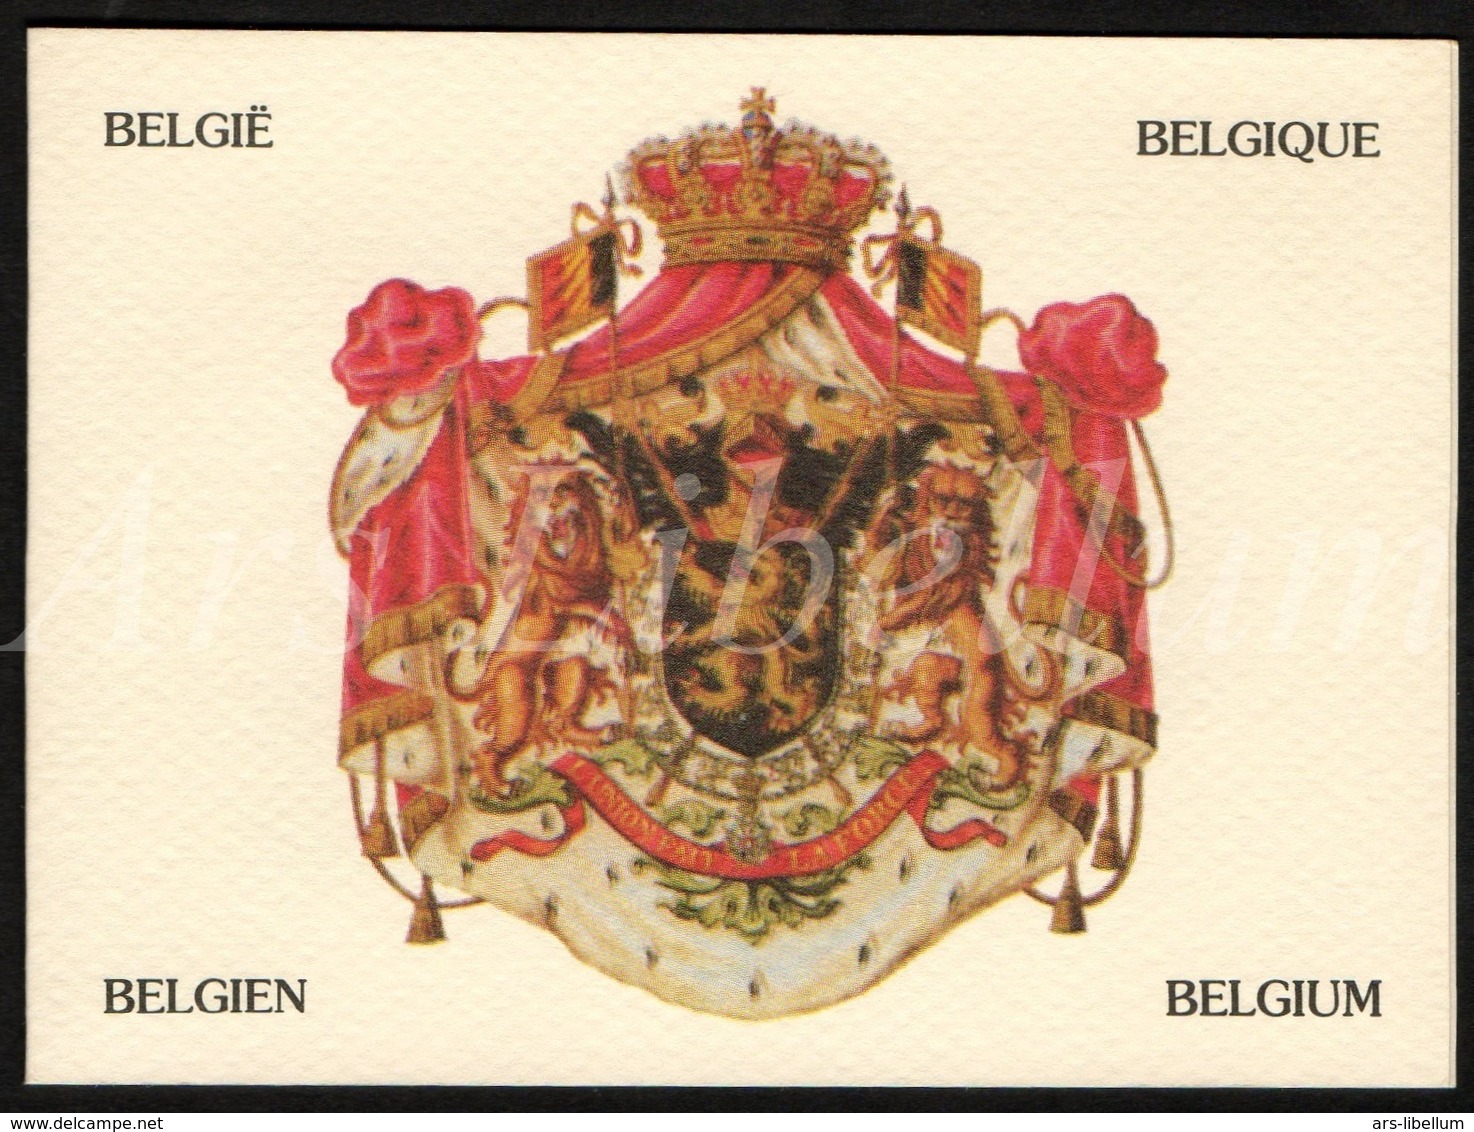 ROYALTY / Belgique / België / Famille Royale / Dynastie Belge / Koningshuis / Telefoonkaart / Belgacom / Telecard - Zonder Chip